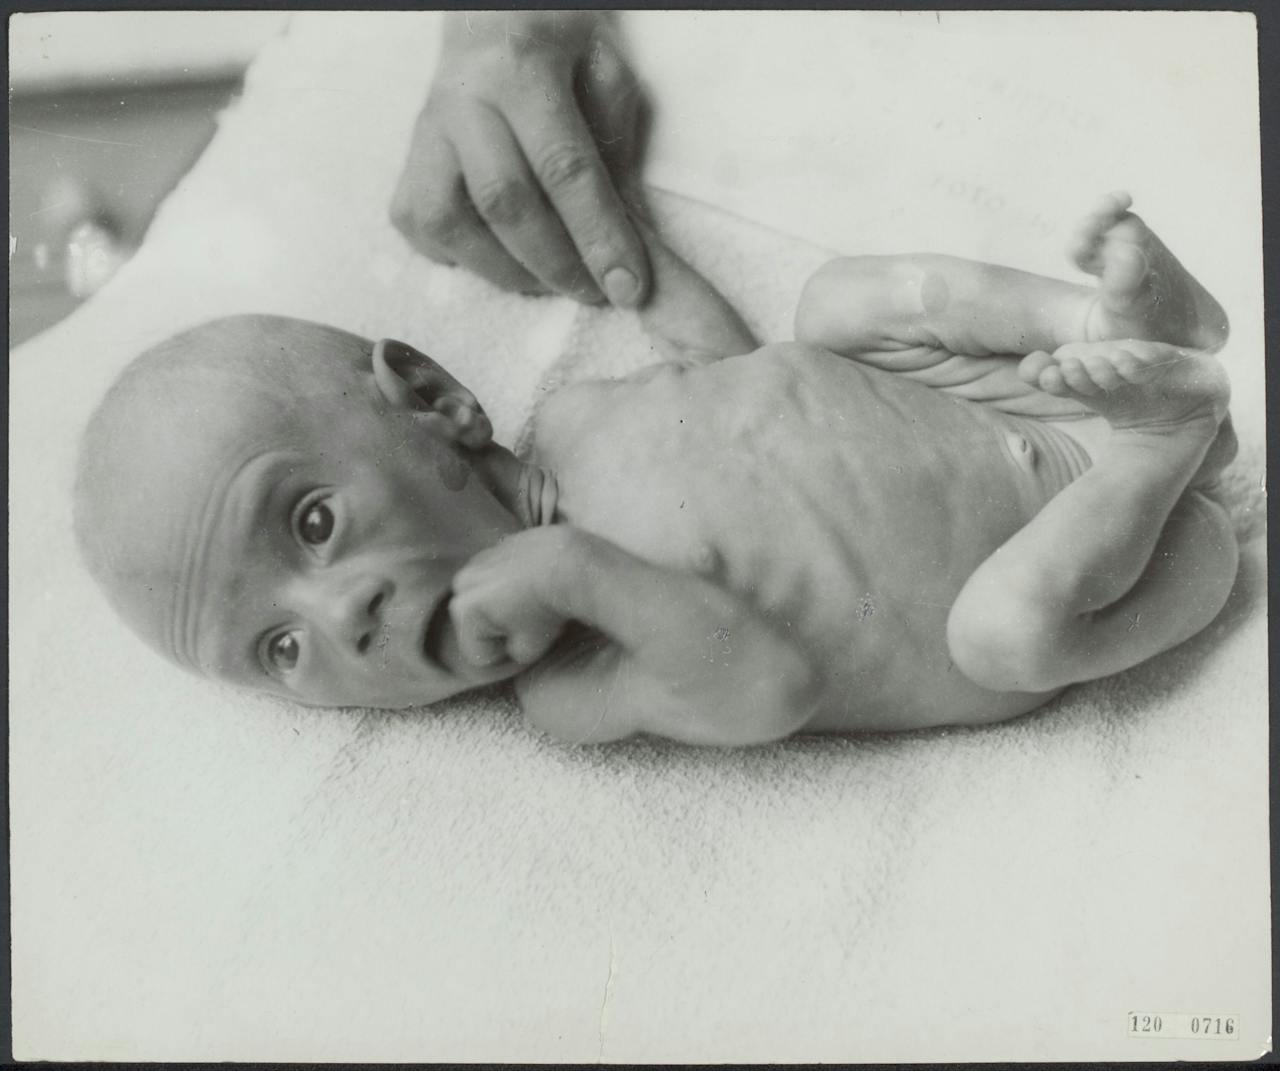 En ondervoede baby tijdens de Hongerwinter van 1944-1945.